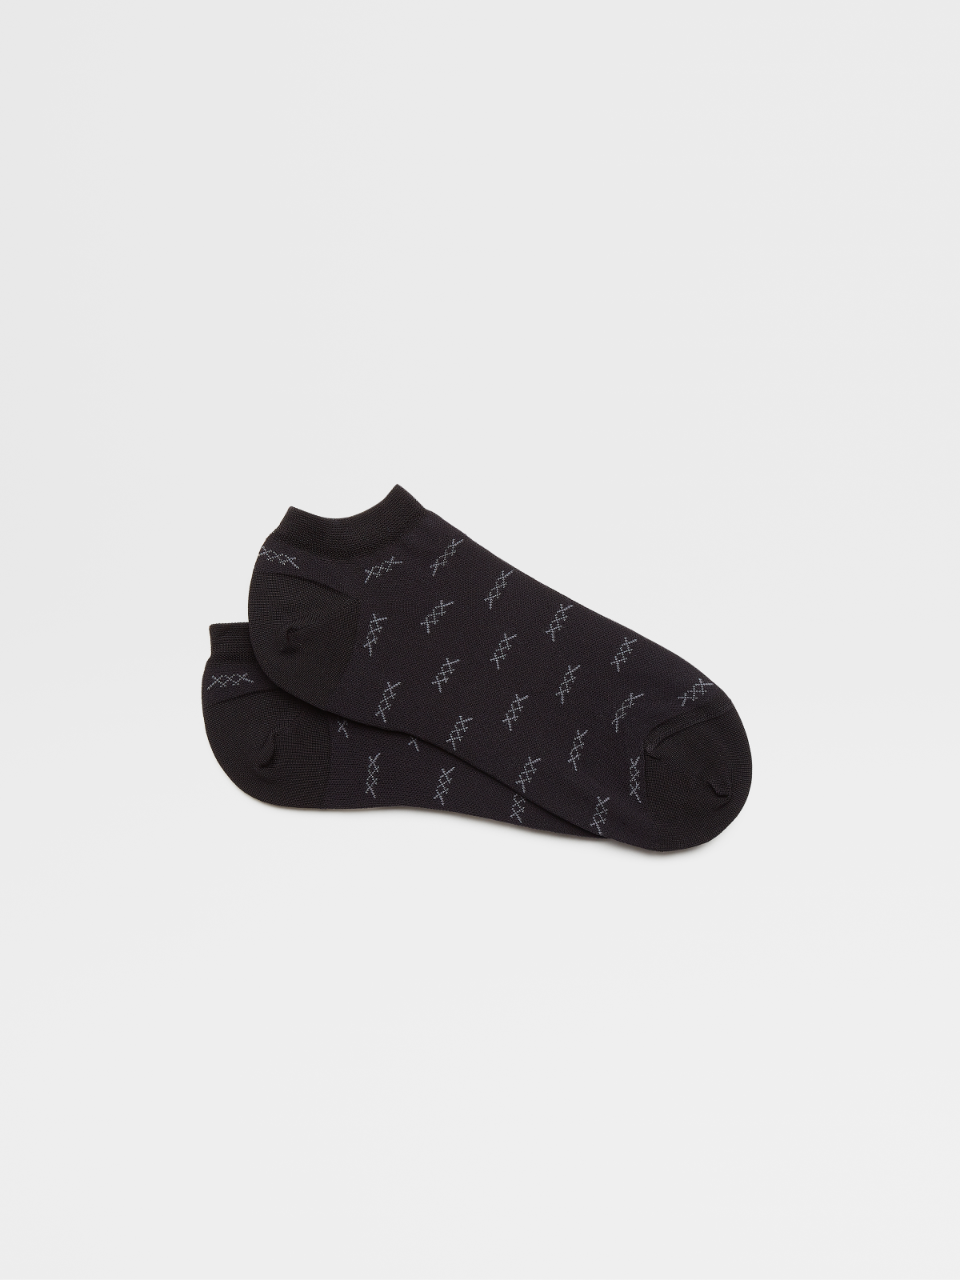 黑色标志性 Triple Stitch 棉质混纺面料球鞋袜